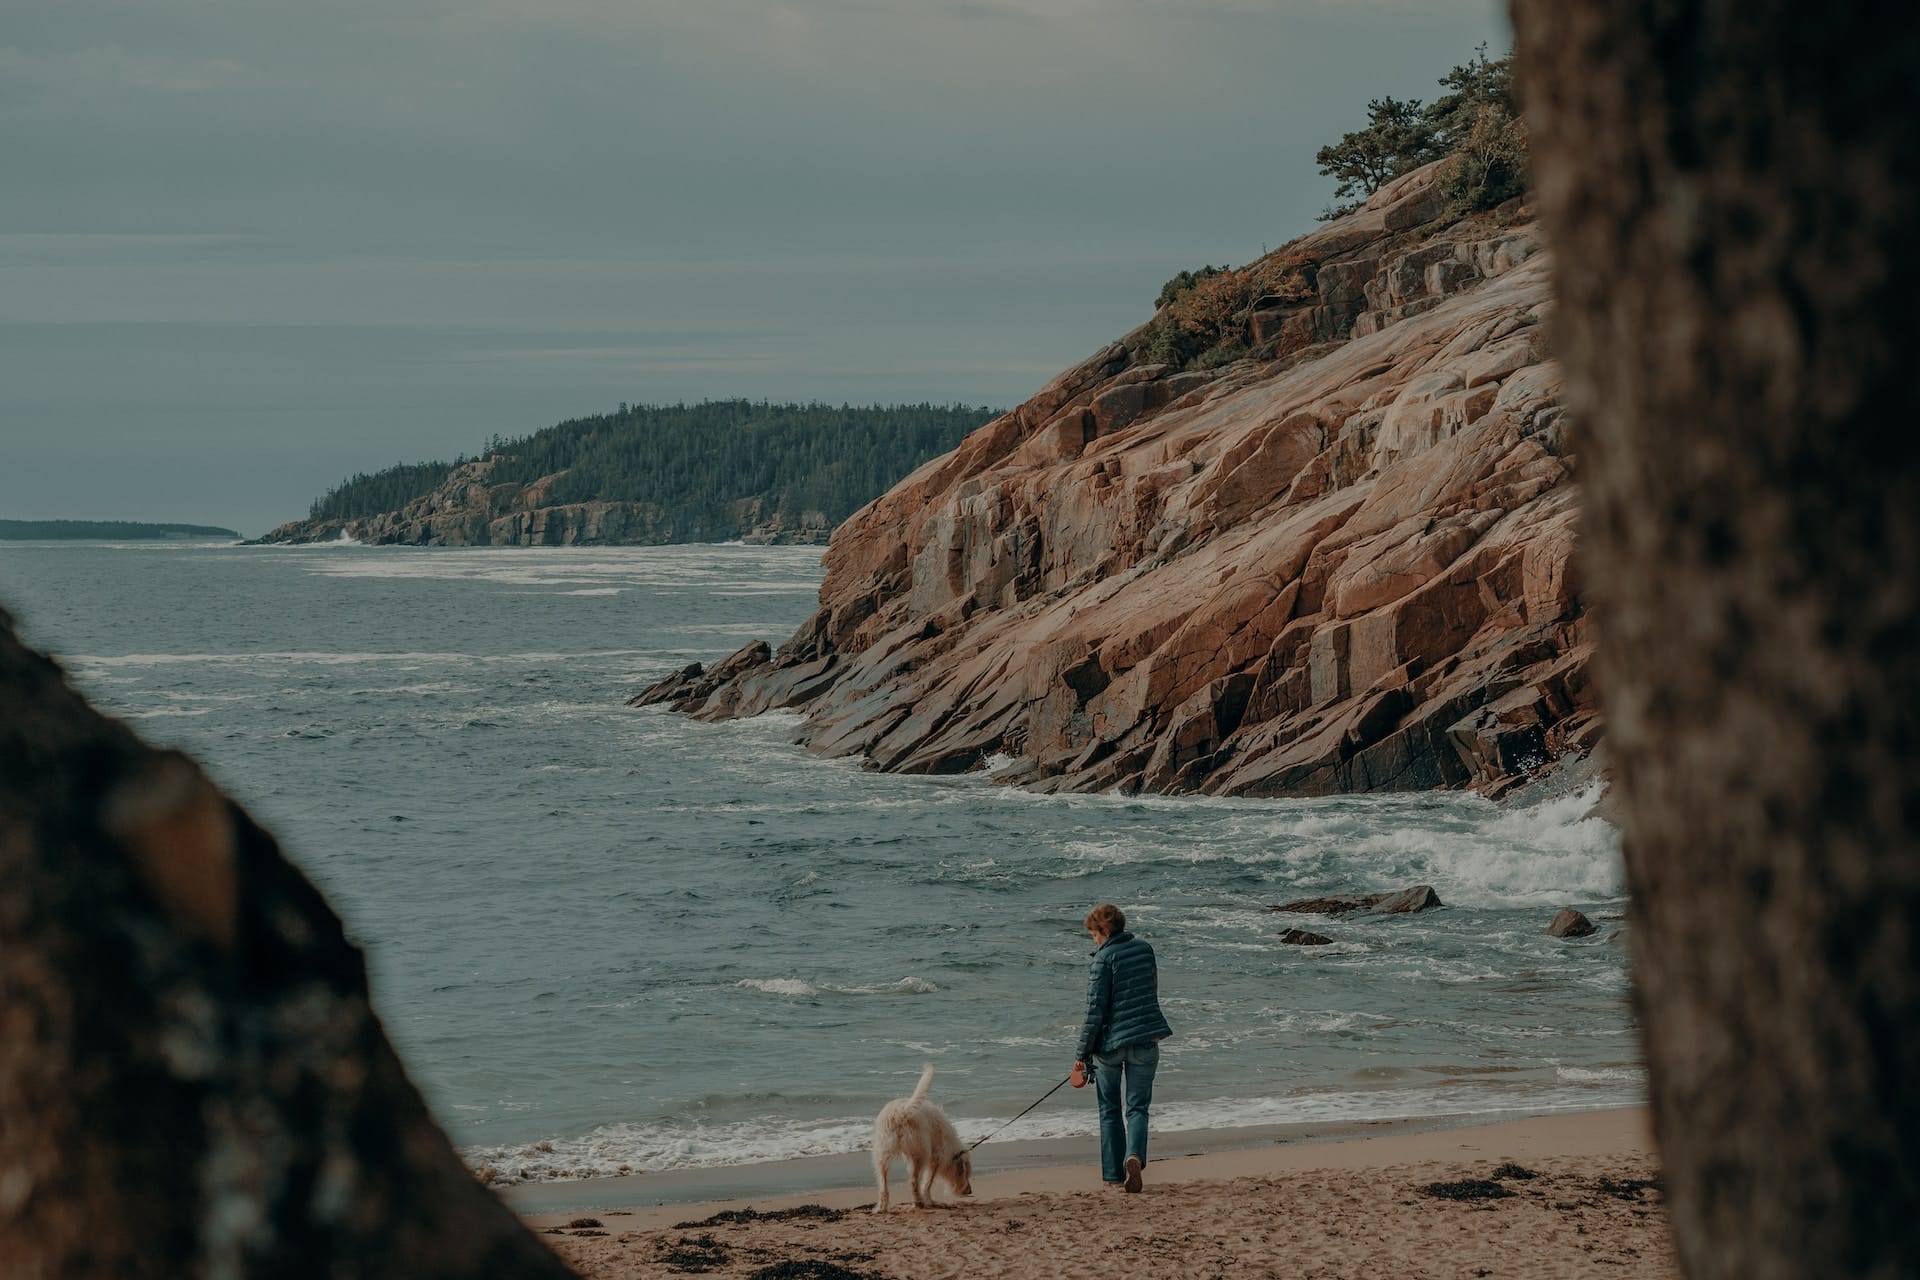 Walking the doggo on the beach - Sand Beach, Acadia National Park, Bar Harbor, Maine, USA